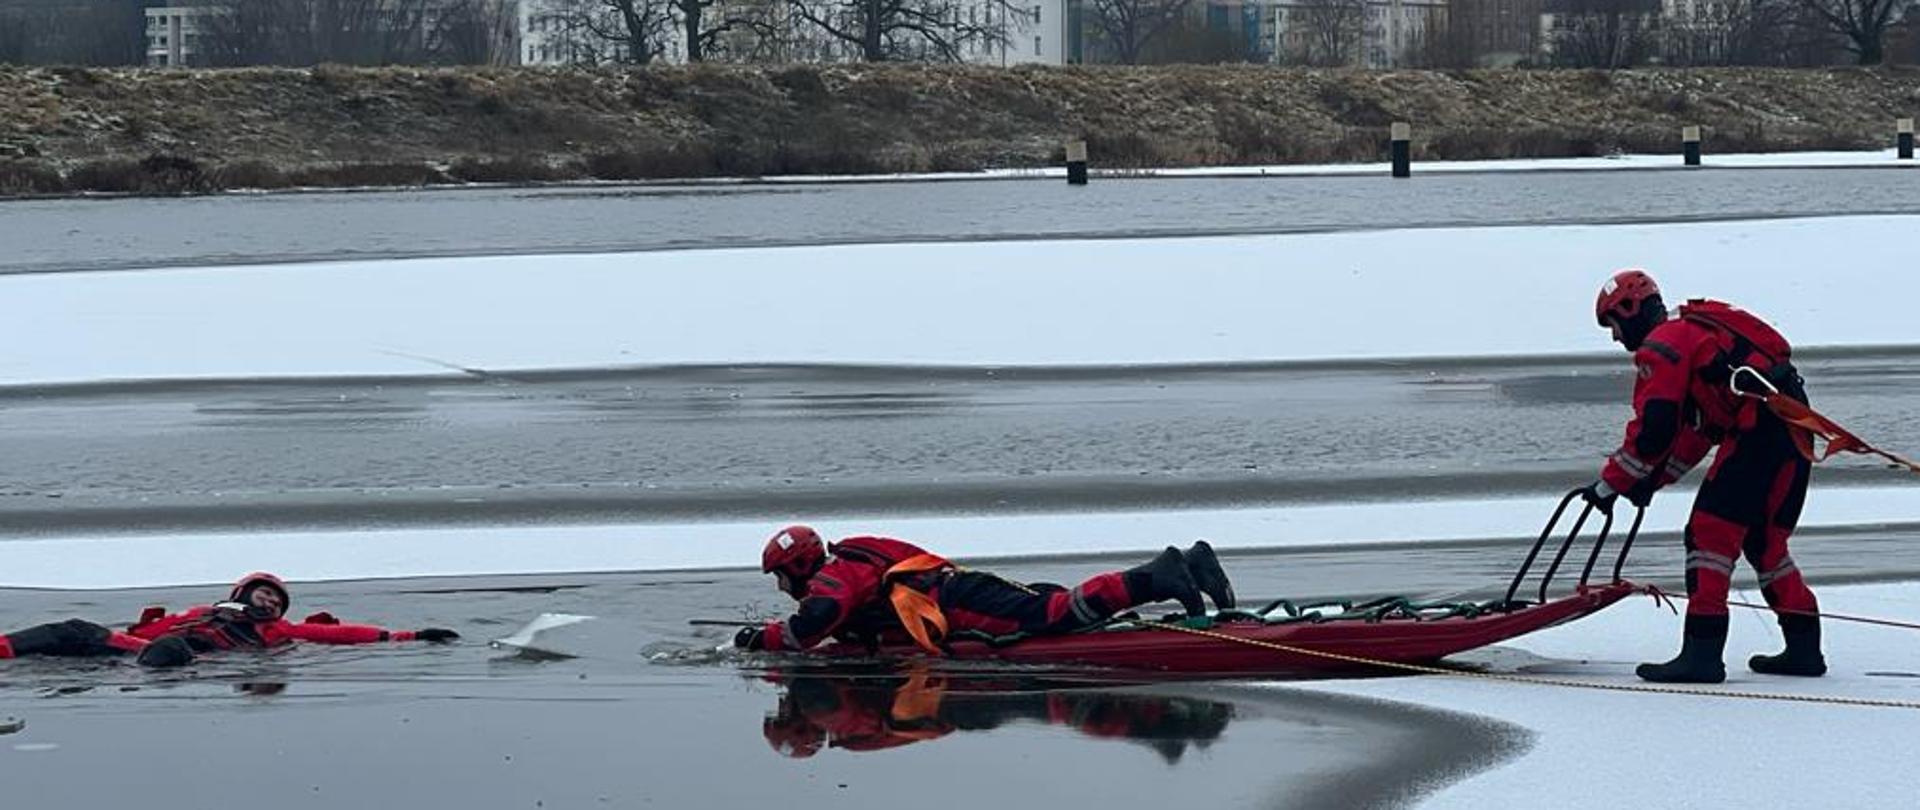 Strażacy ubrani w specjalne ubrania do pracy w wodzie symulujący podjęcie osoby poszkodowanej z obszaru zalodzonego. Strażacy wykorzystują sanie lodowe i są zabezpieczeni linkami. .